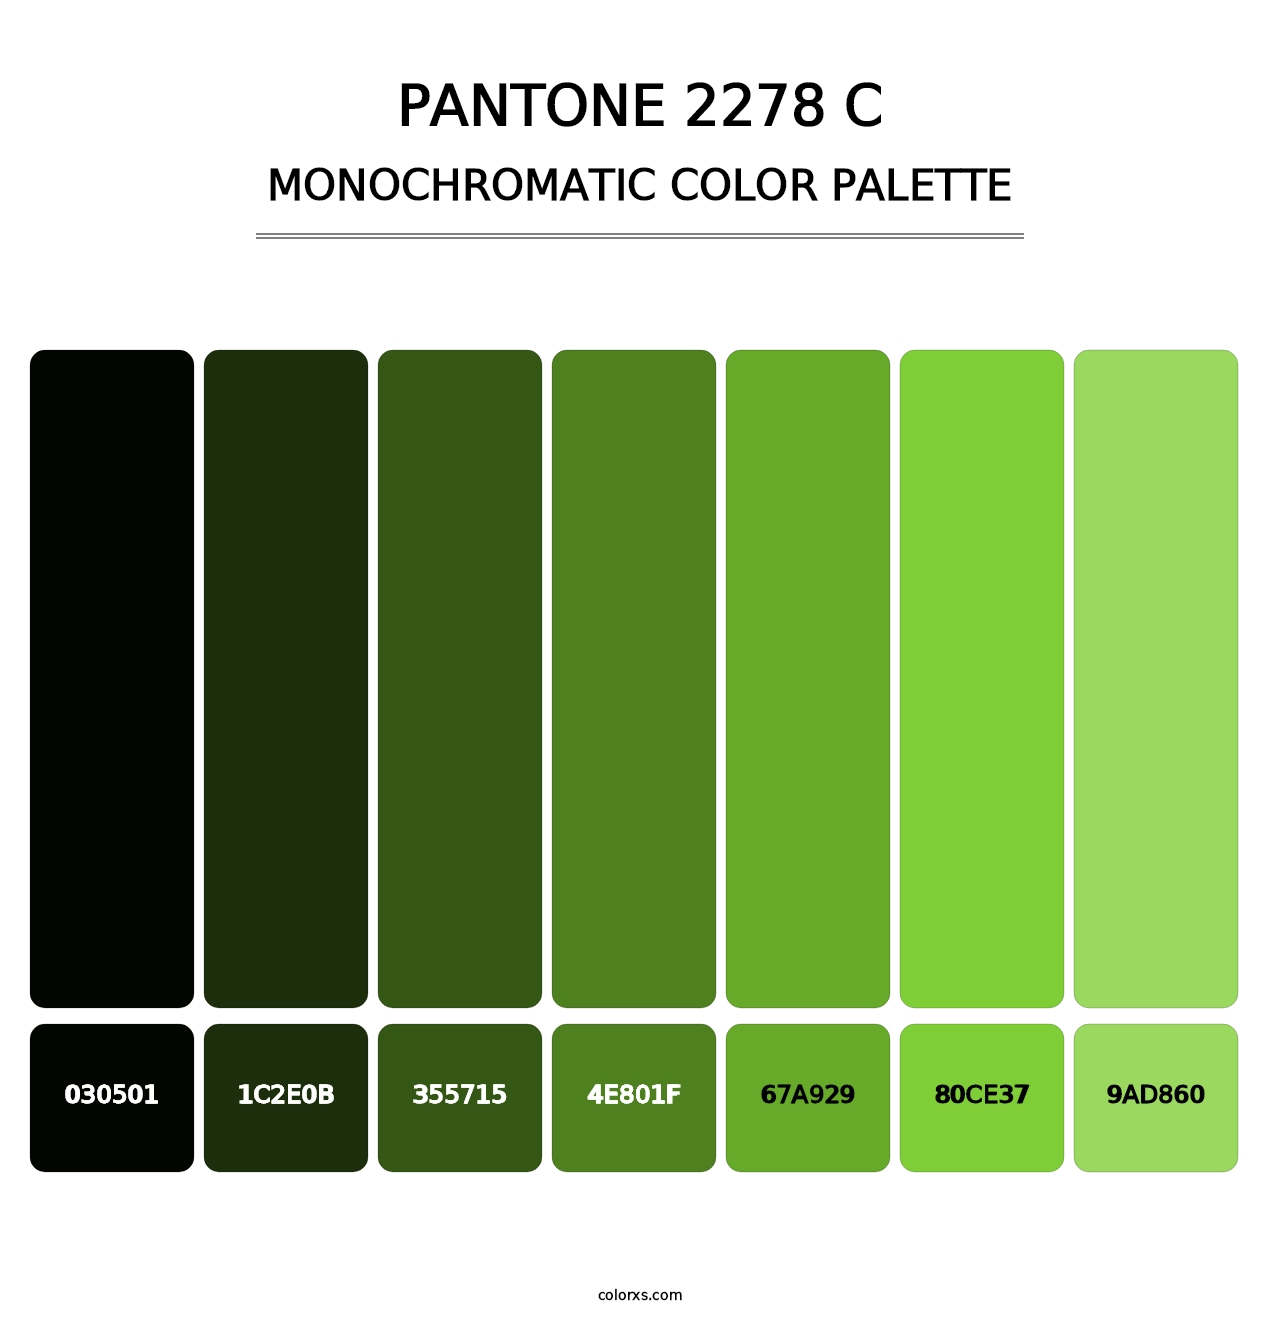 PANTONE 2278 C - Monochromatic Color Palette